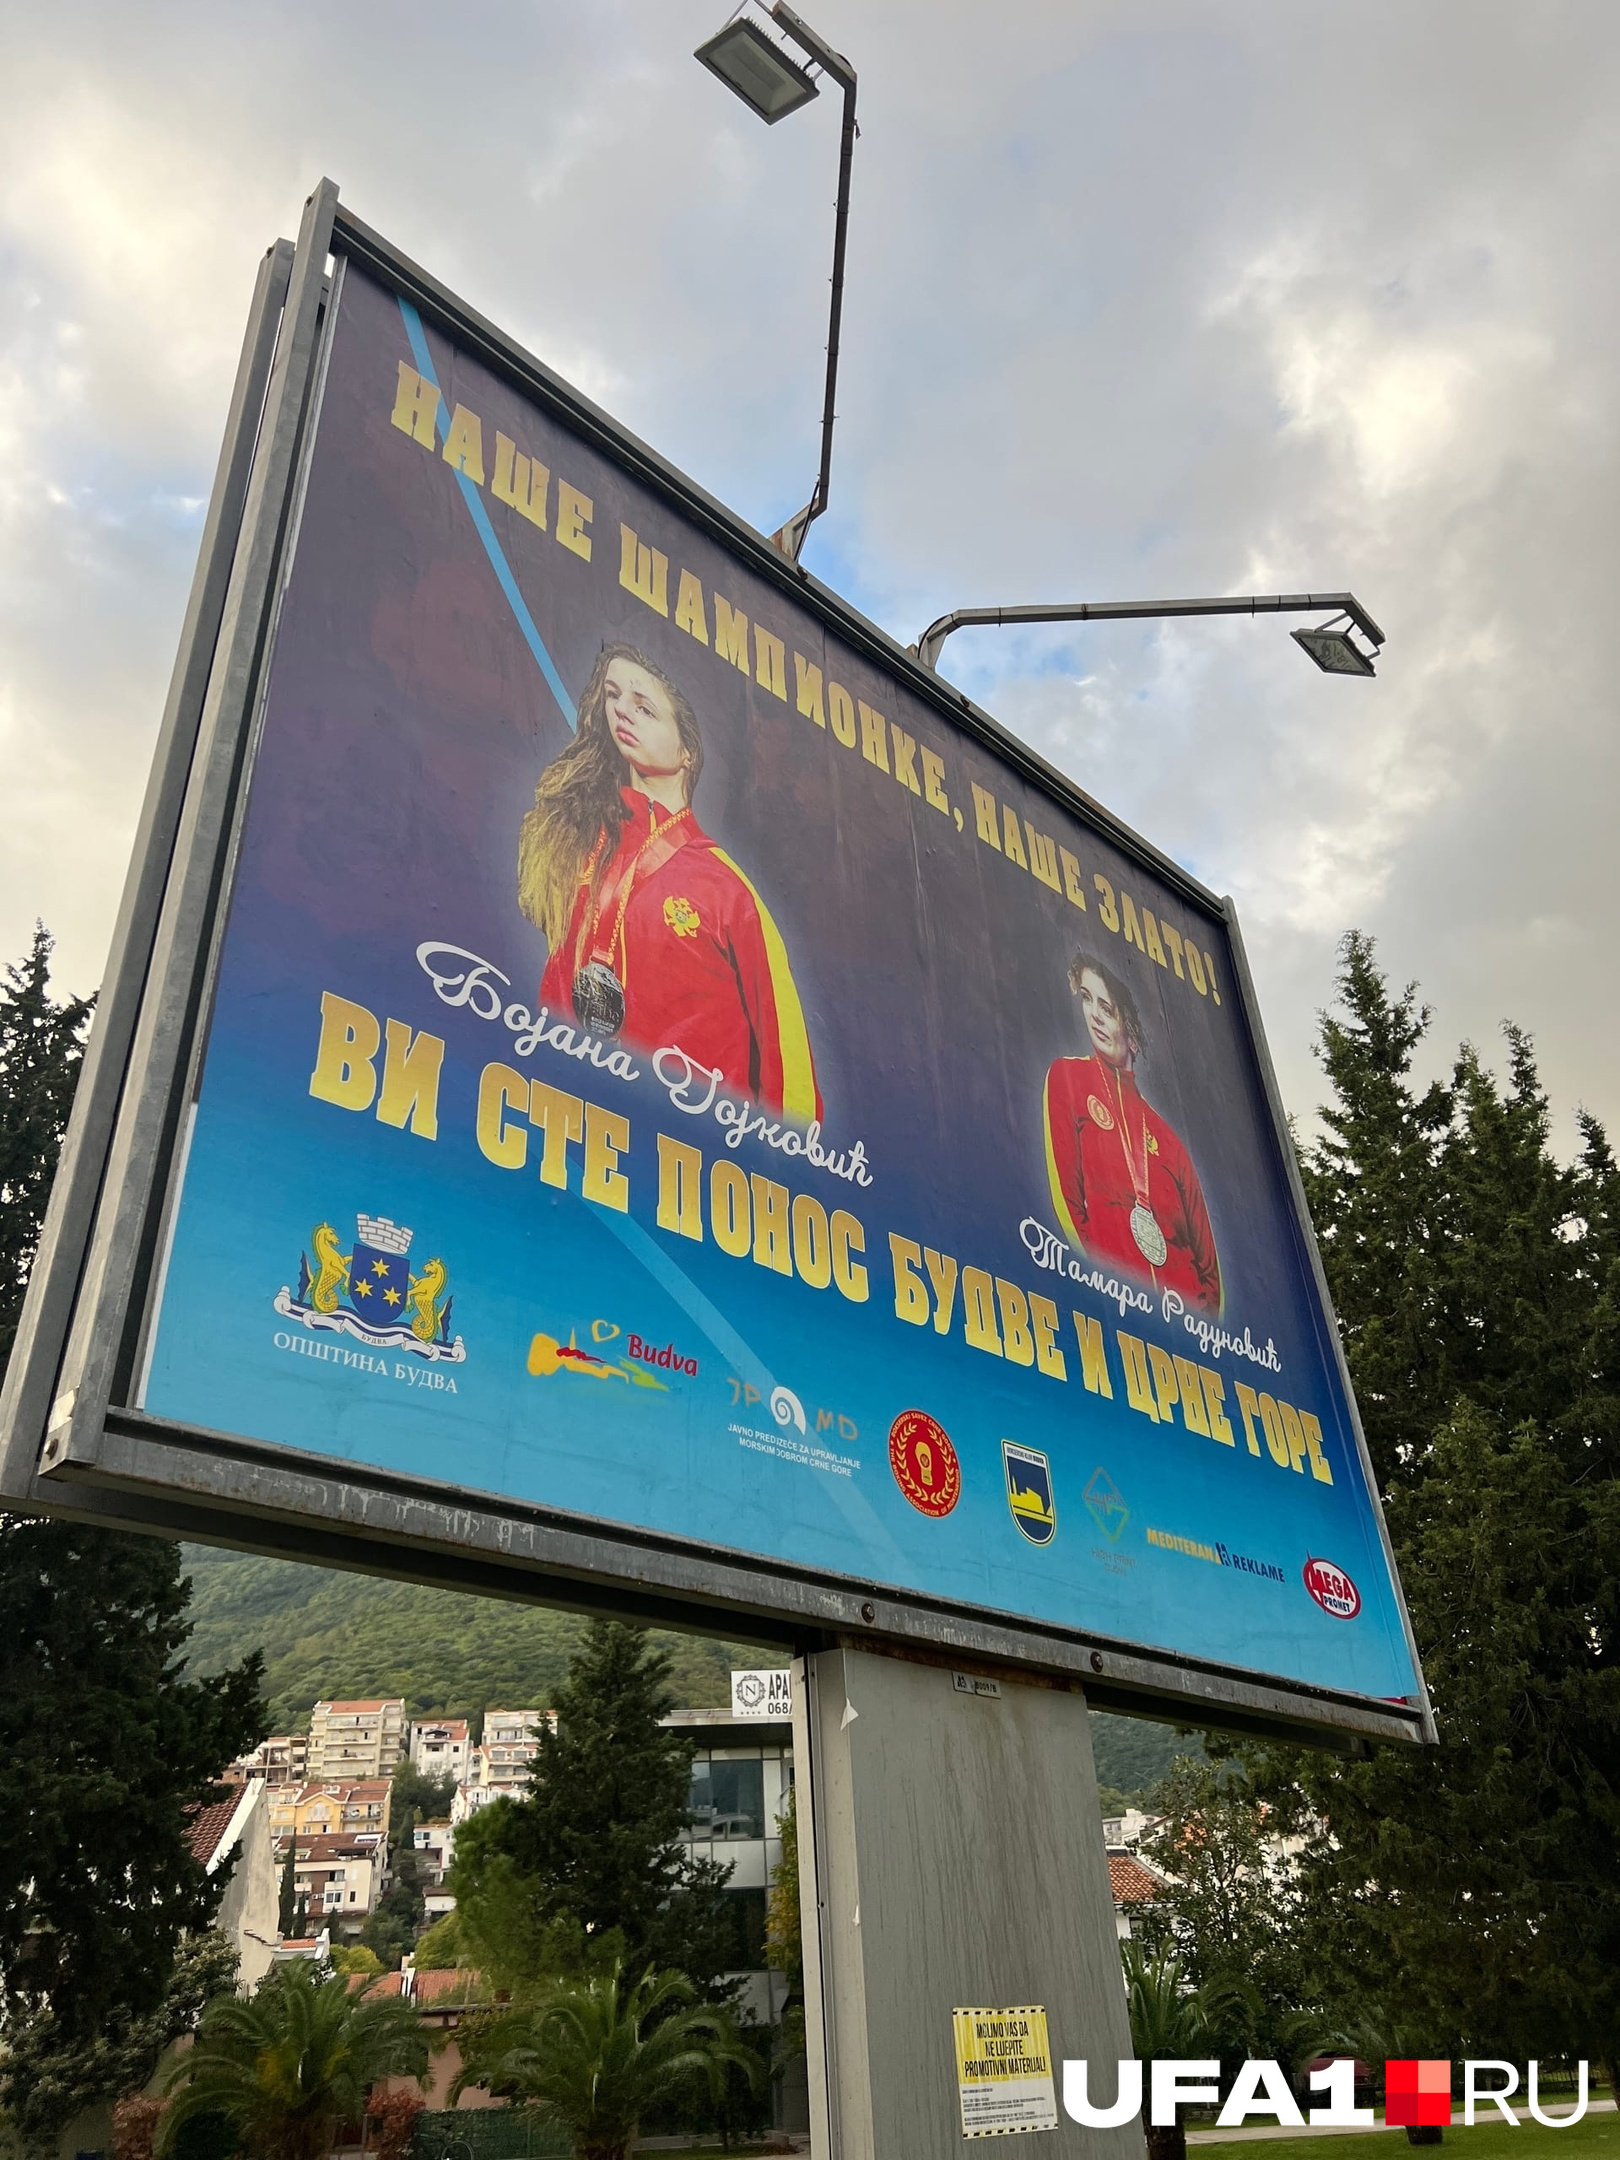 «Наши чемпионы, наше золото! Вы гордость Будвы и Черногории», — говорится на плакате